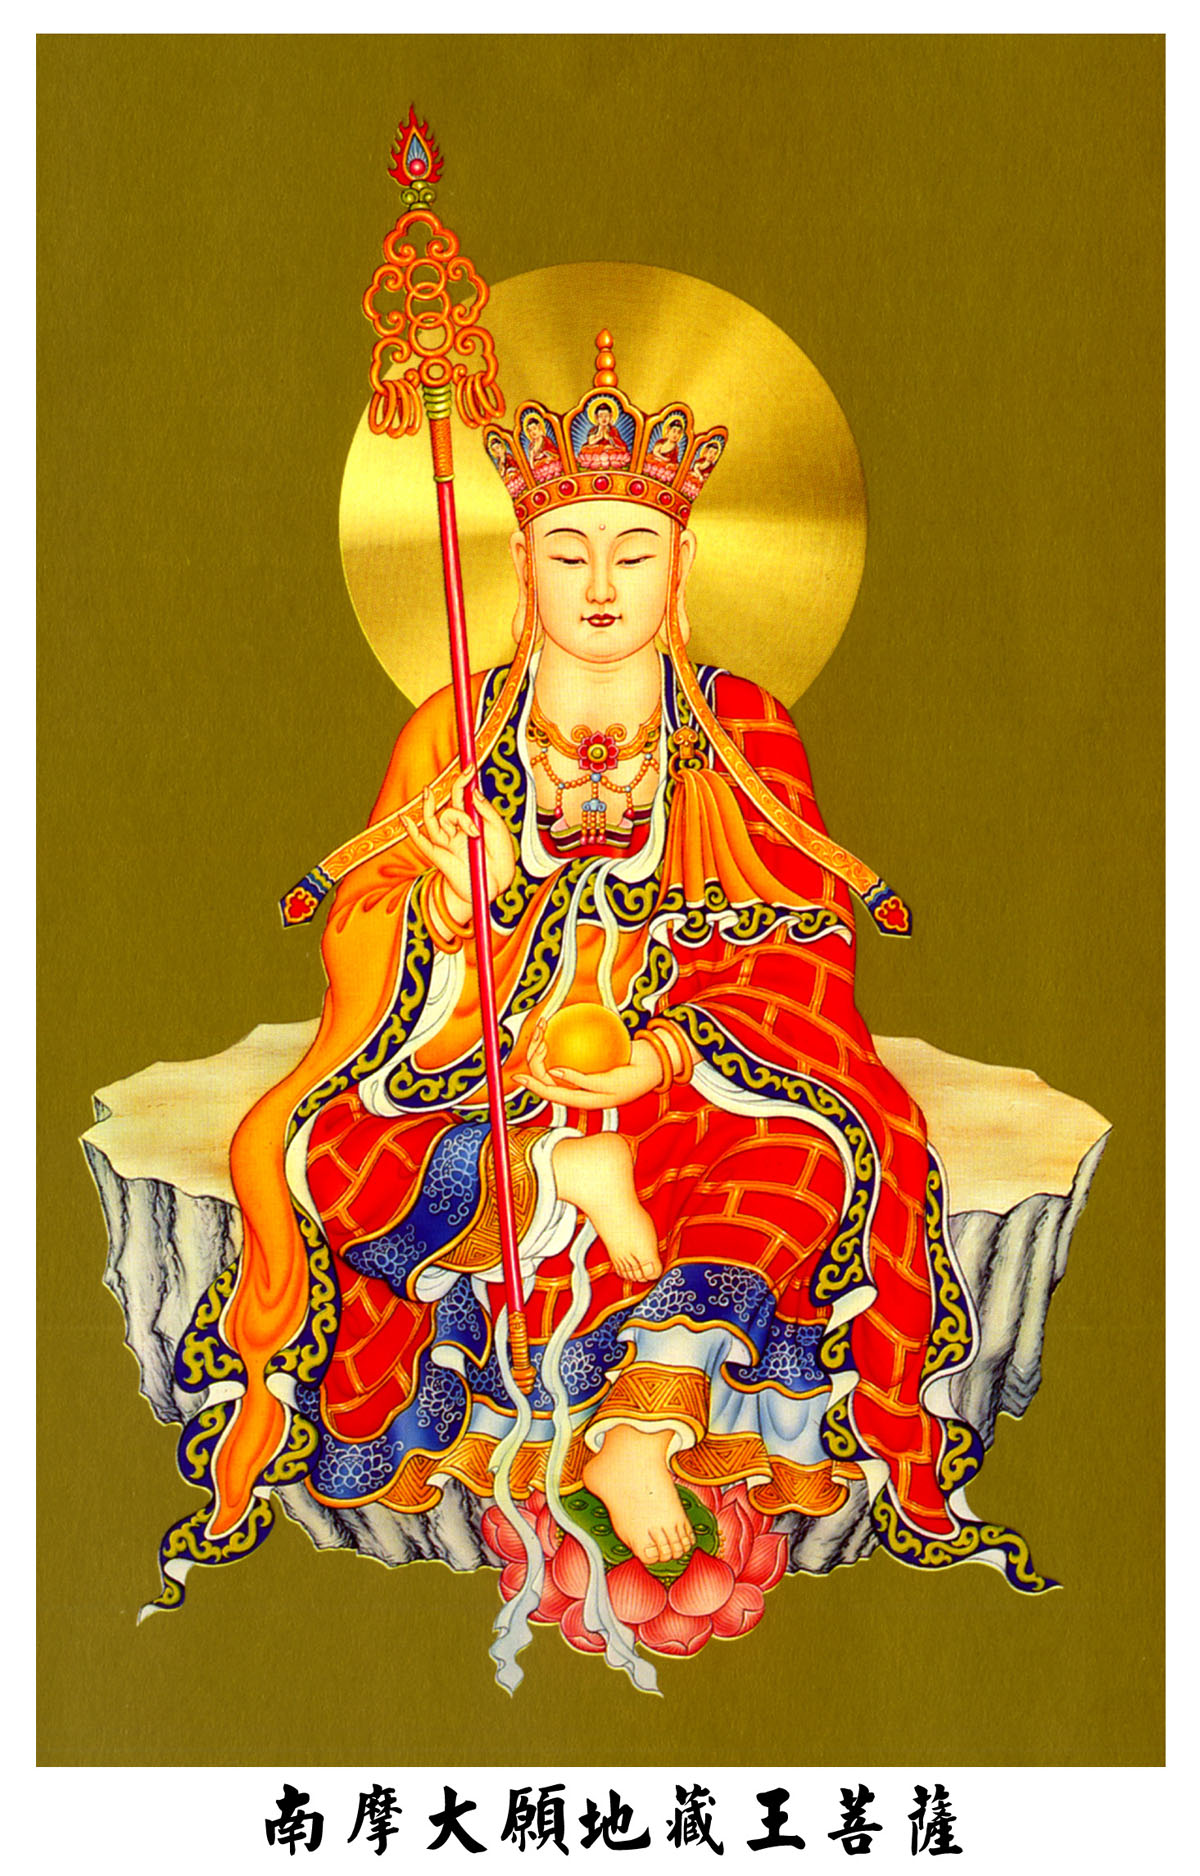 地藏王菩萨 藏传佛教图片